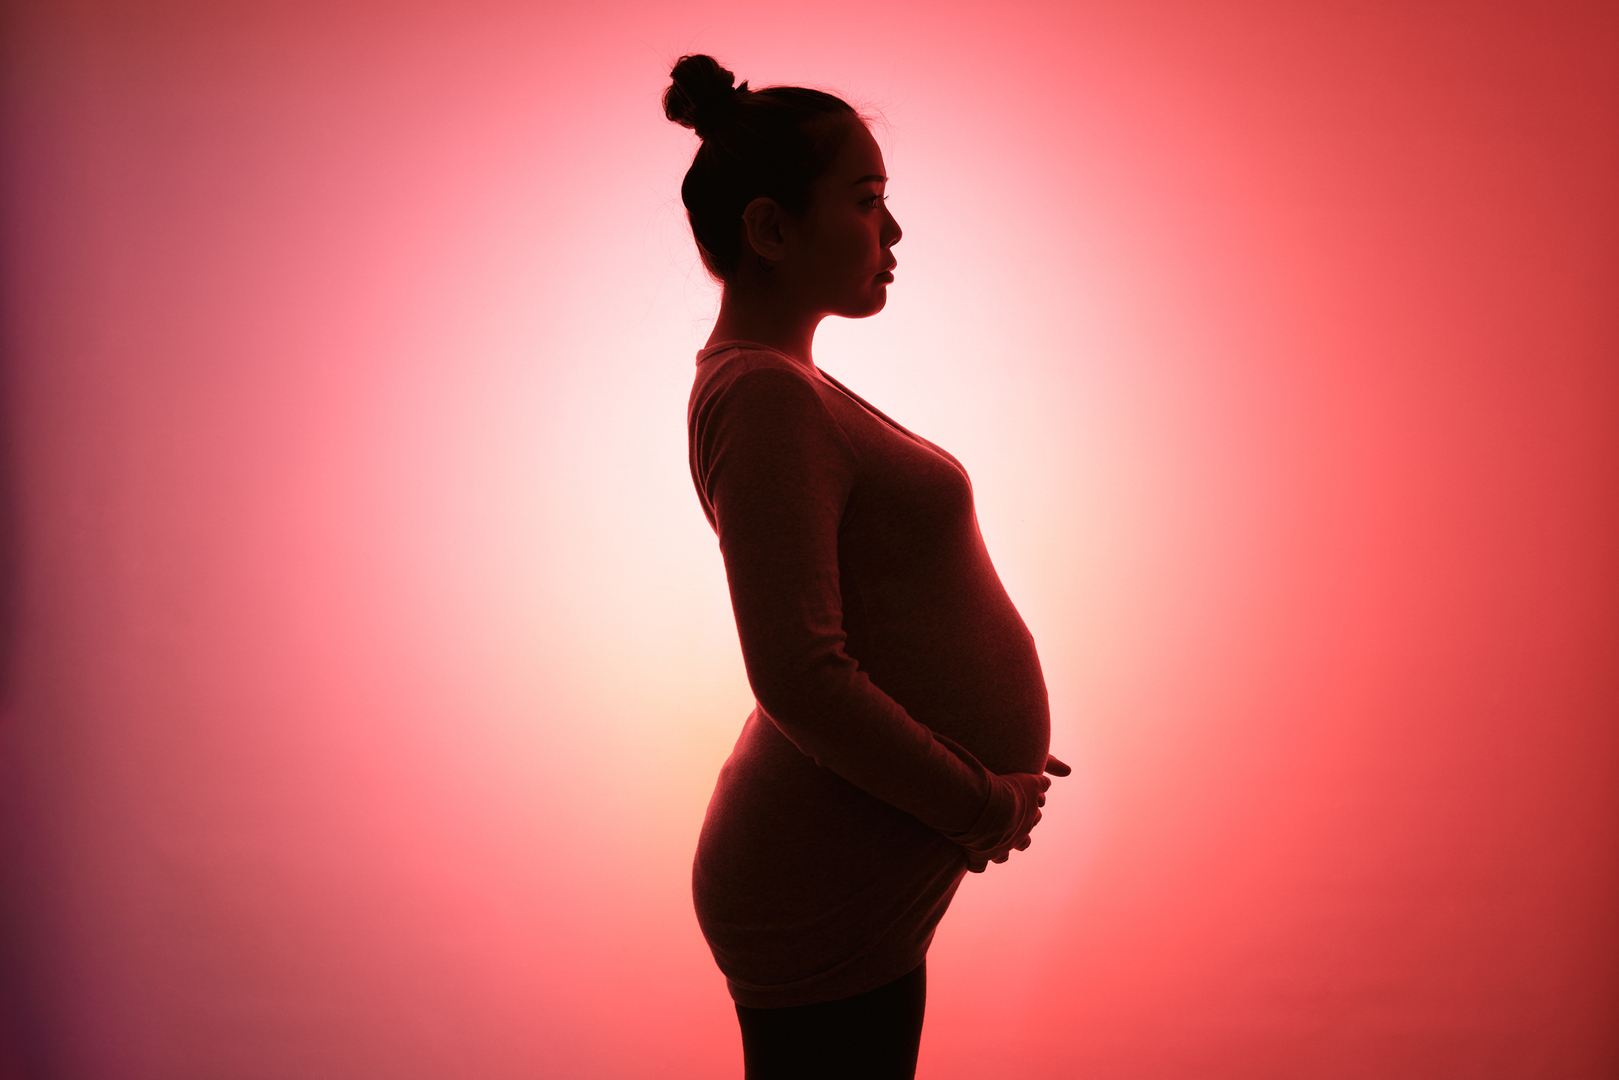 إجهاد الأمهات الحوامل قد يؤدي إلى تسريع شيخوخة خلايا الأطفال